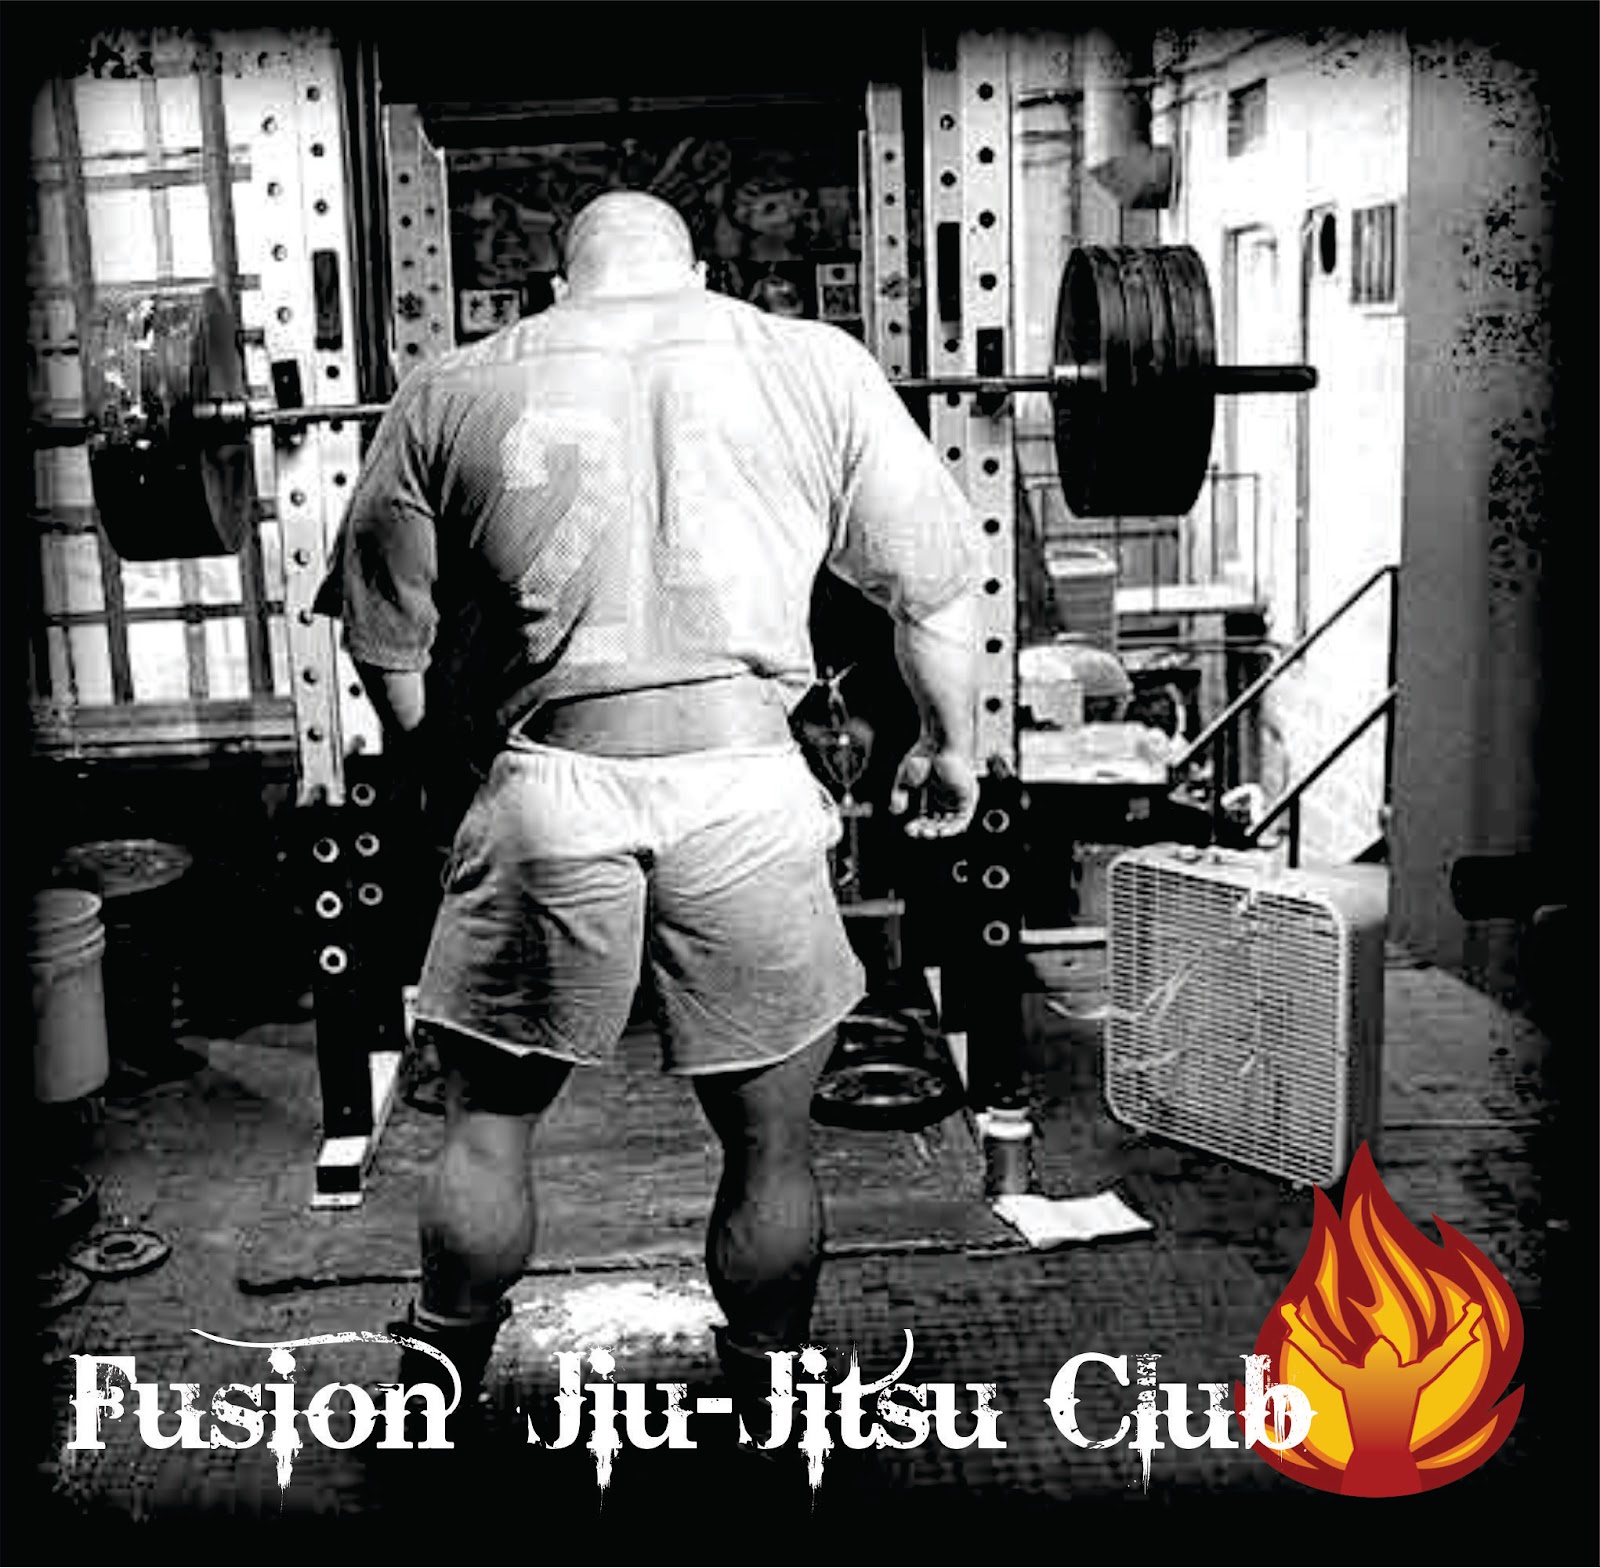 Gracie Jiu Jitsu Wallpaper Wallpaper fusion jiu jitsu